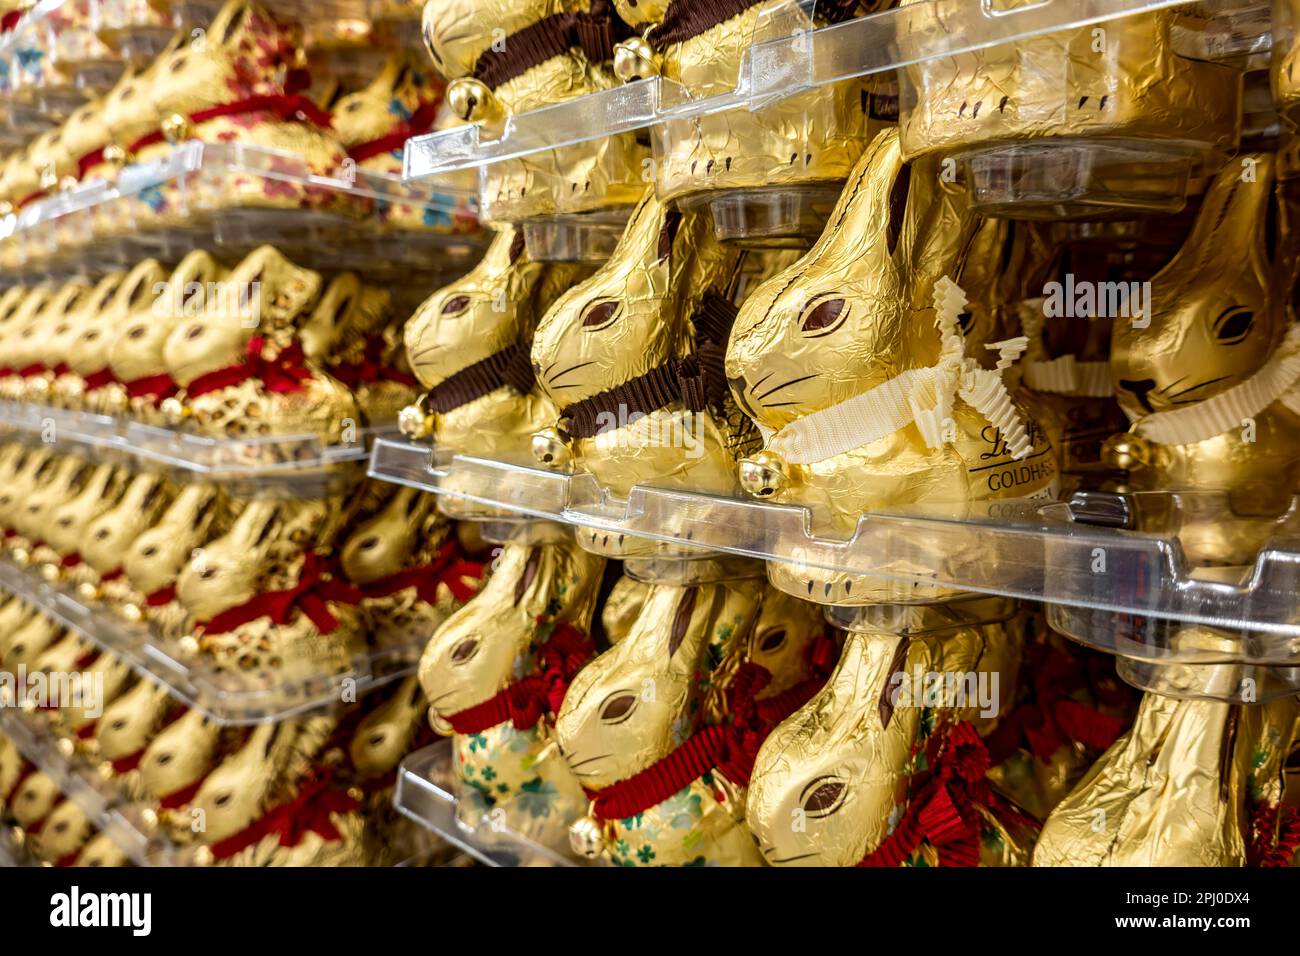 Nombreux lapins de Pâques au chocolat, lapins au chocolat, lapins d'or Lindt, palette dans un supermarché, centre commercial, Allemagne Banque D'Images